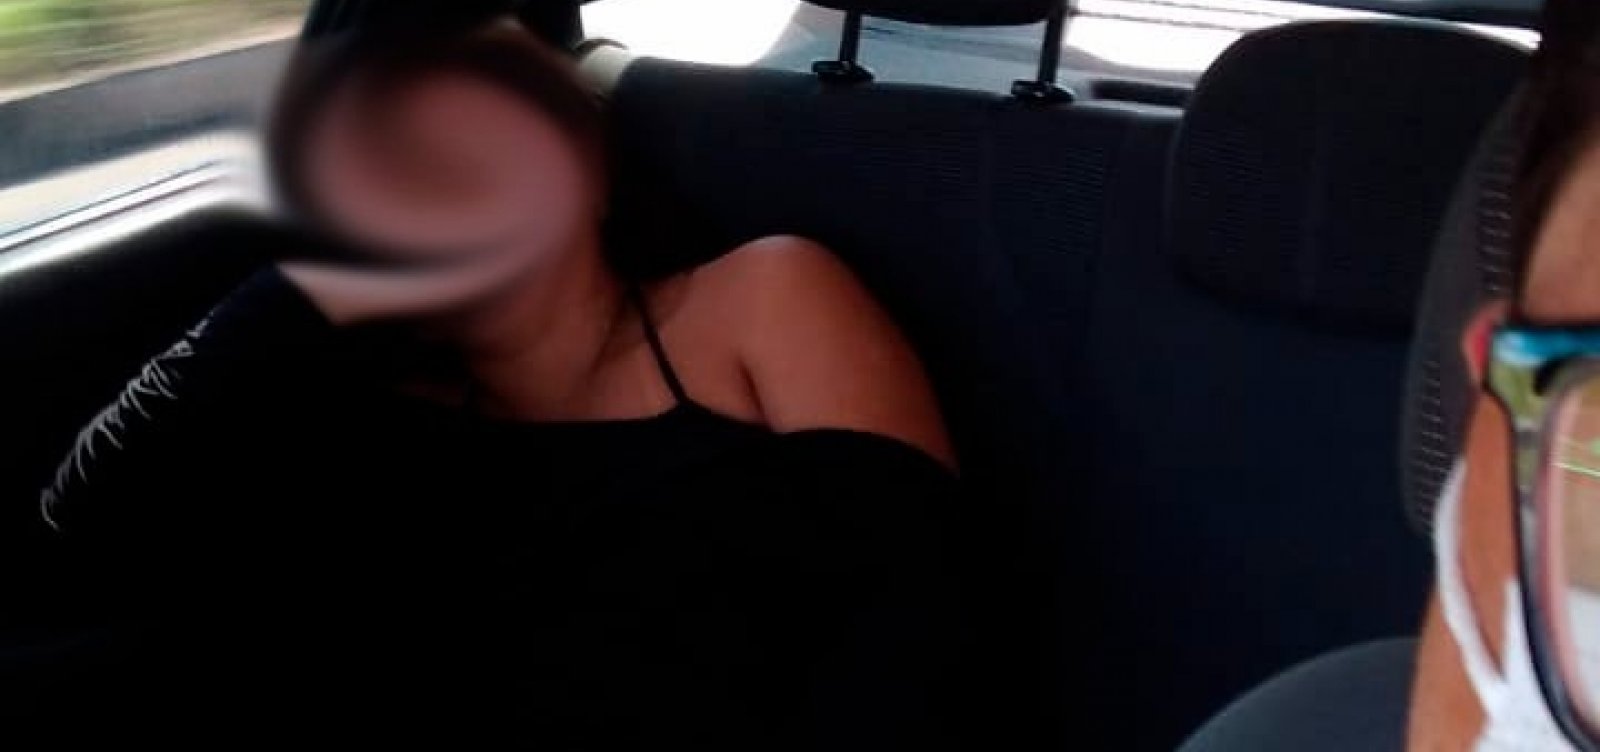 Passageira dorme no carro e motorista de aplicativo expõe foto com comentários sexuais